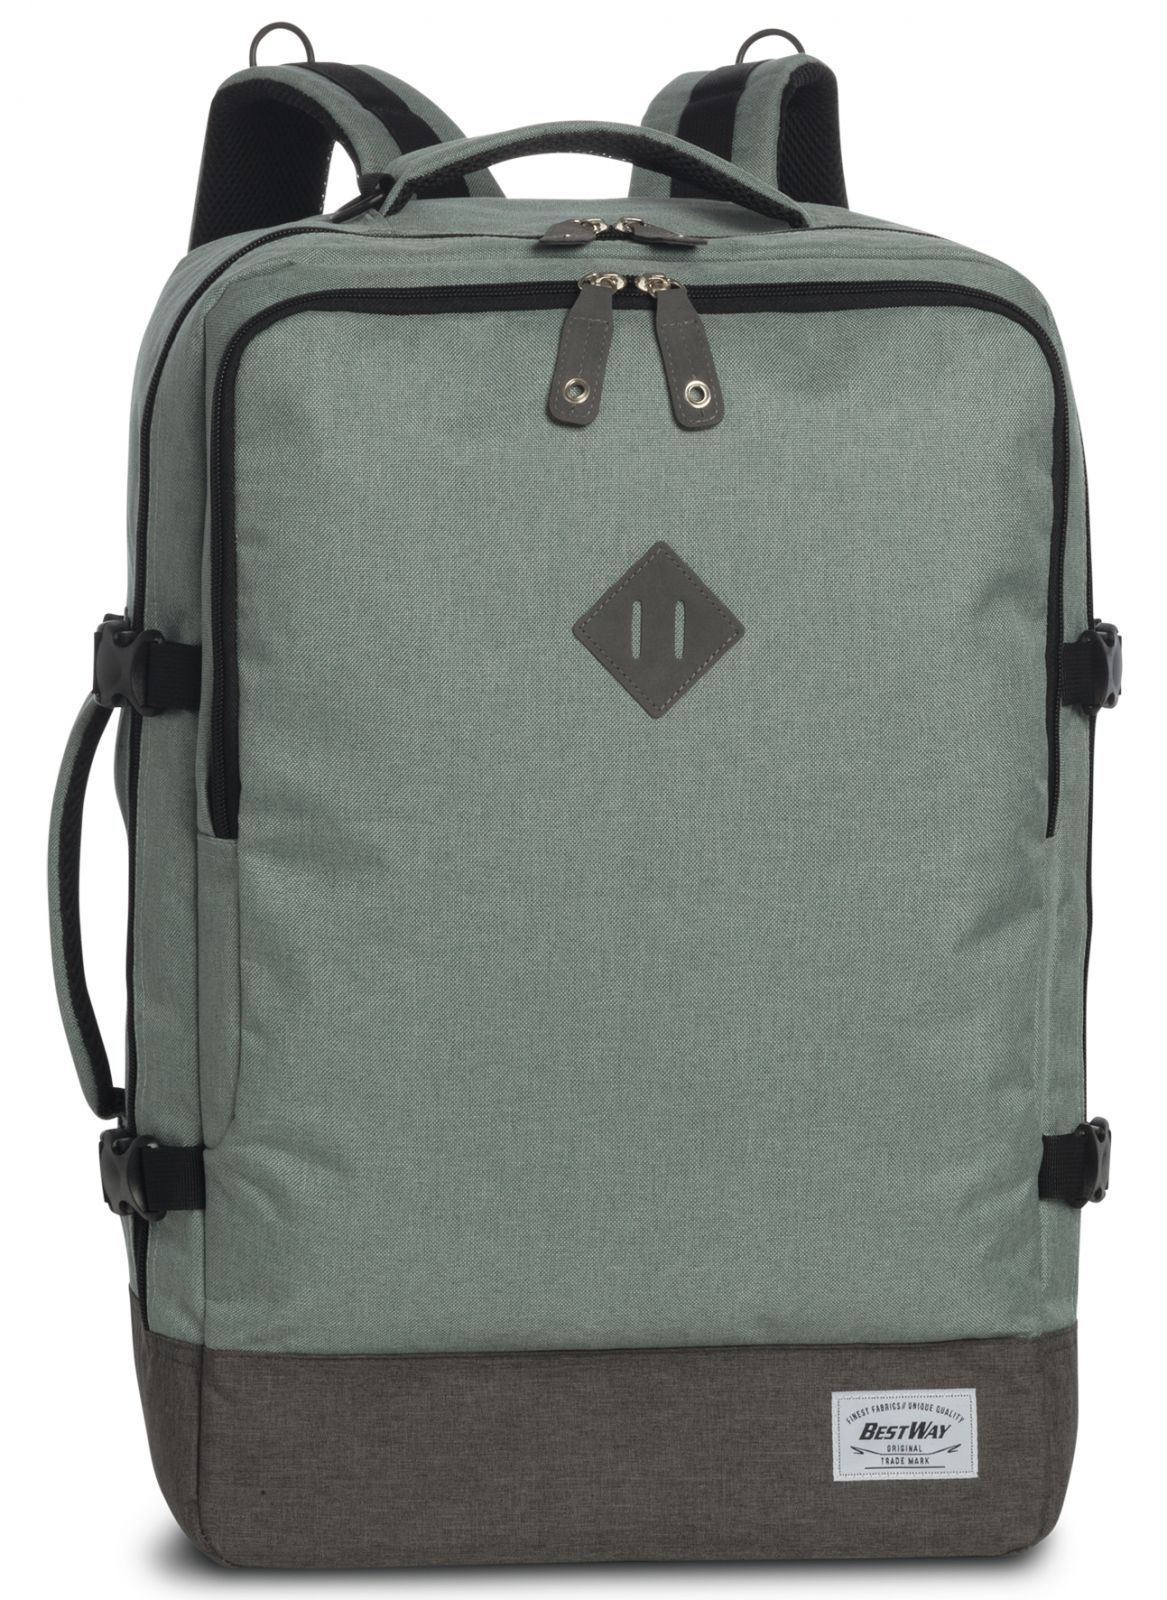 BestWay Příruční zavazadlo - batoh Cabin PRO 54x35x20 green